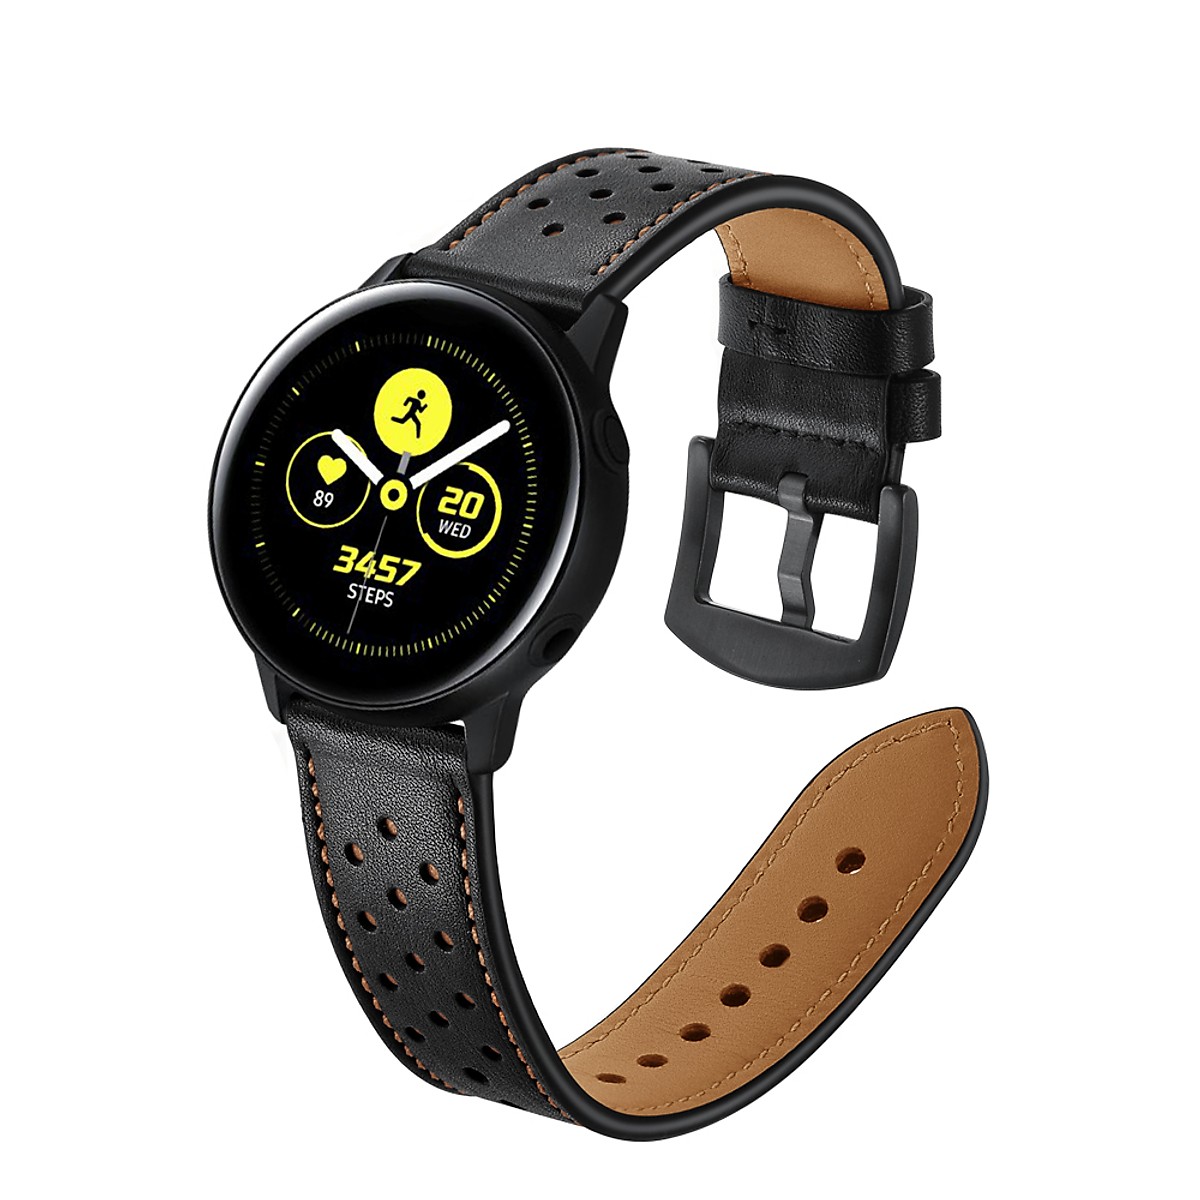 Dây Da Sport Leather Dành Cho Galaxy Watch Active 2, Galaxy Watch Active 1, Galaxy Watch 42 (Size 20mm